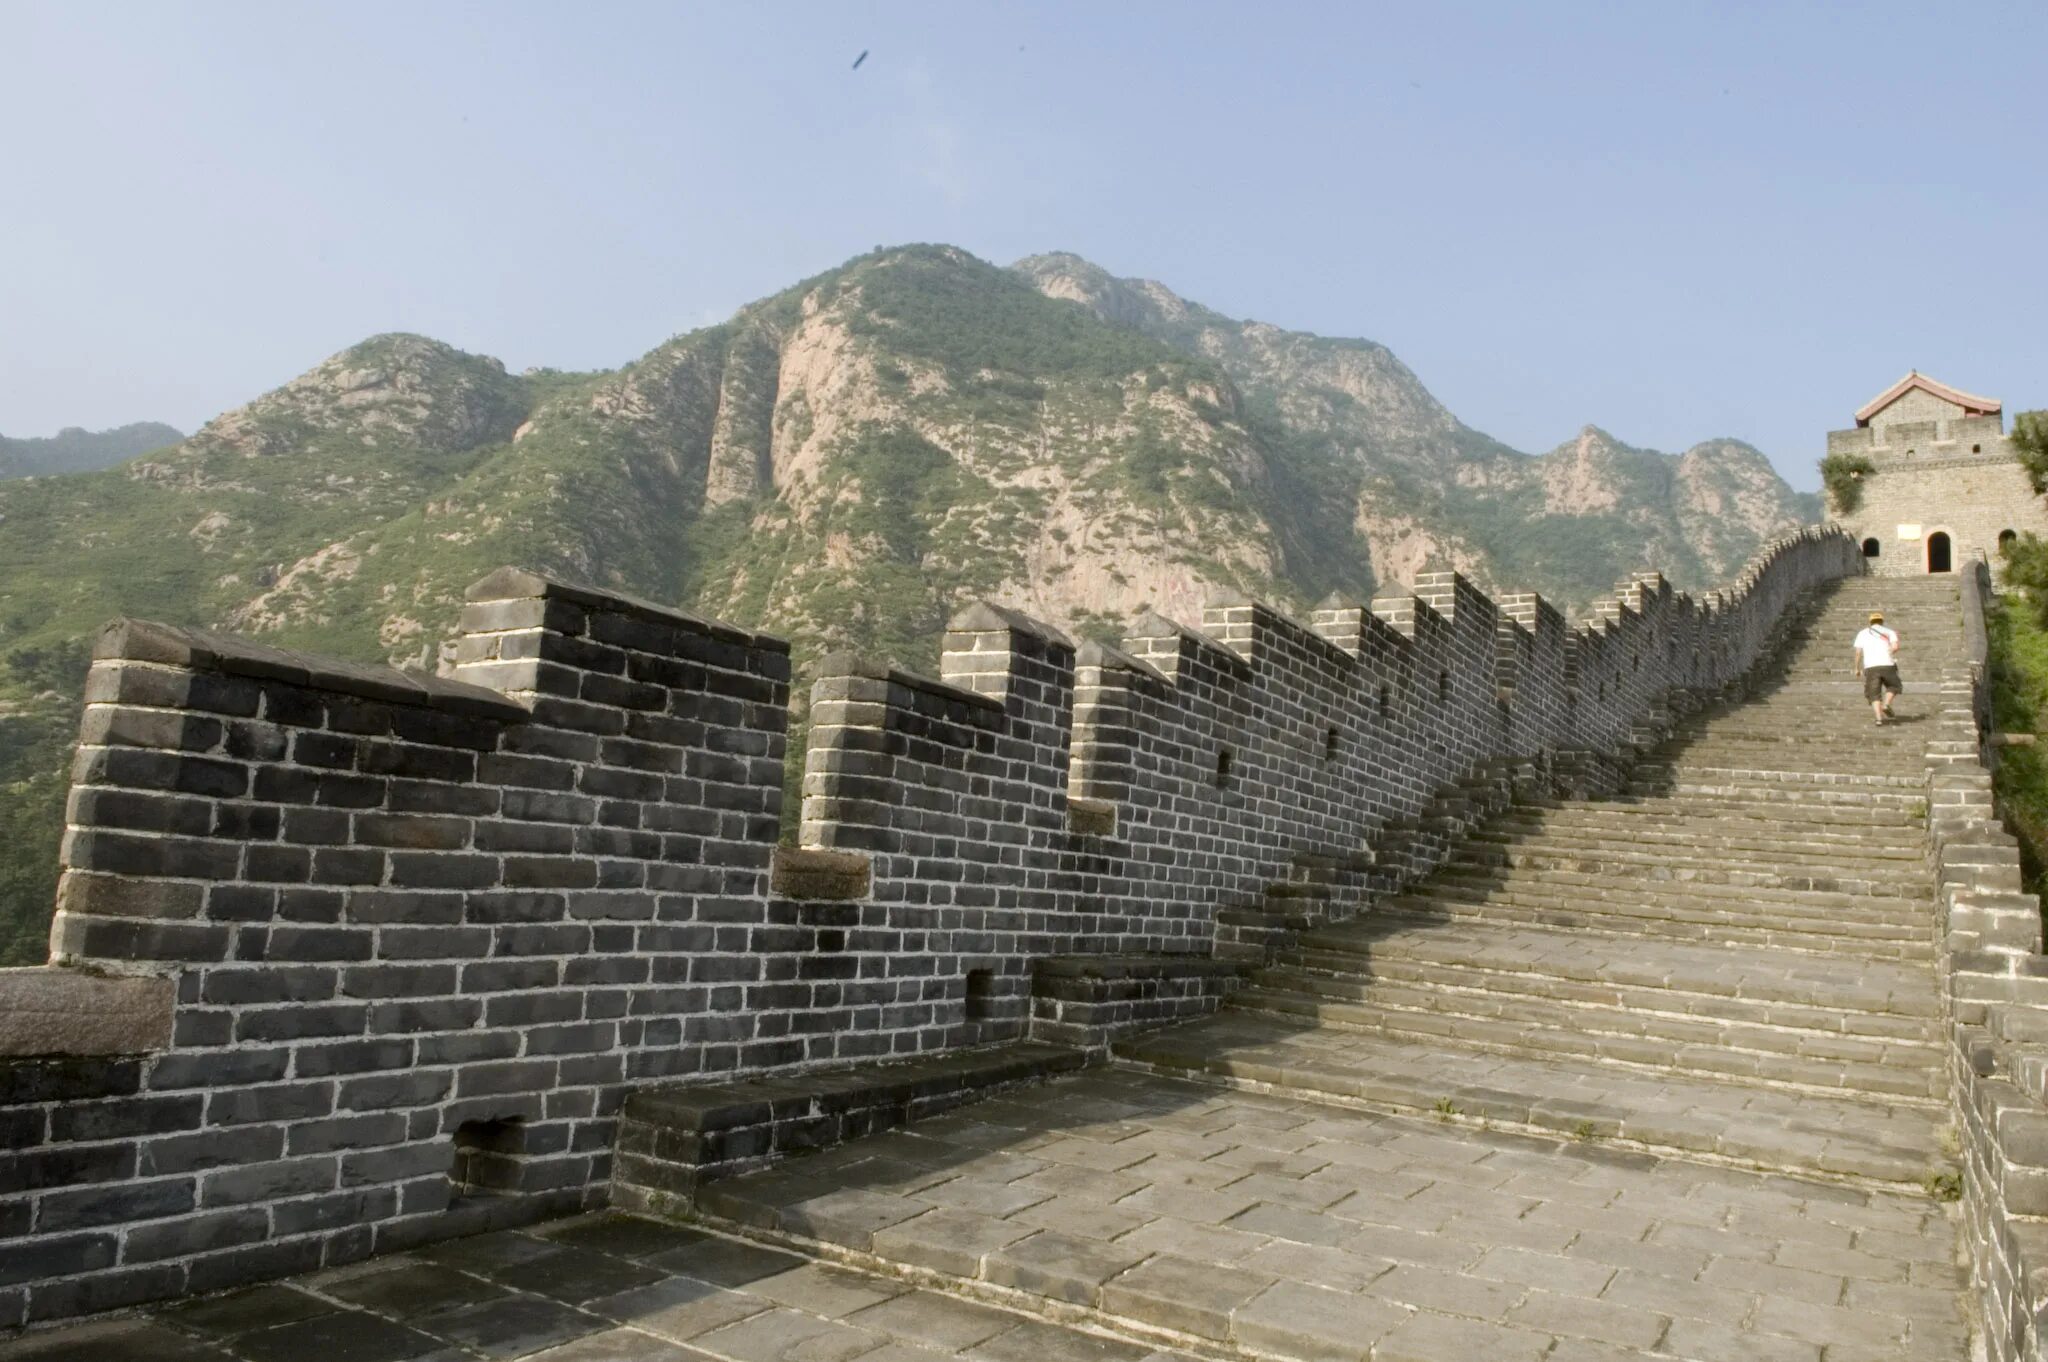 Края китайской стены. Великая китайская стена Шаньхайгуань. Застава Шаньхайгуань. Циньхуандао китайская стена. ШАНЬХАЙГУАНЬСКИЙ проход.